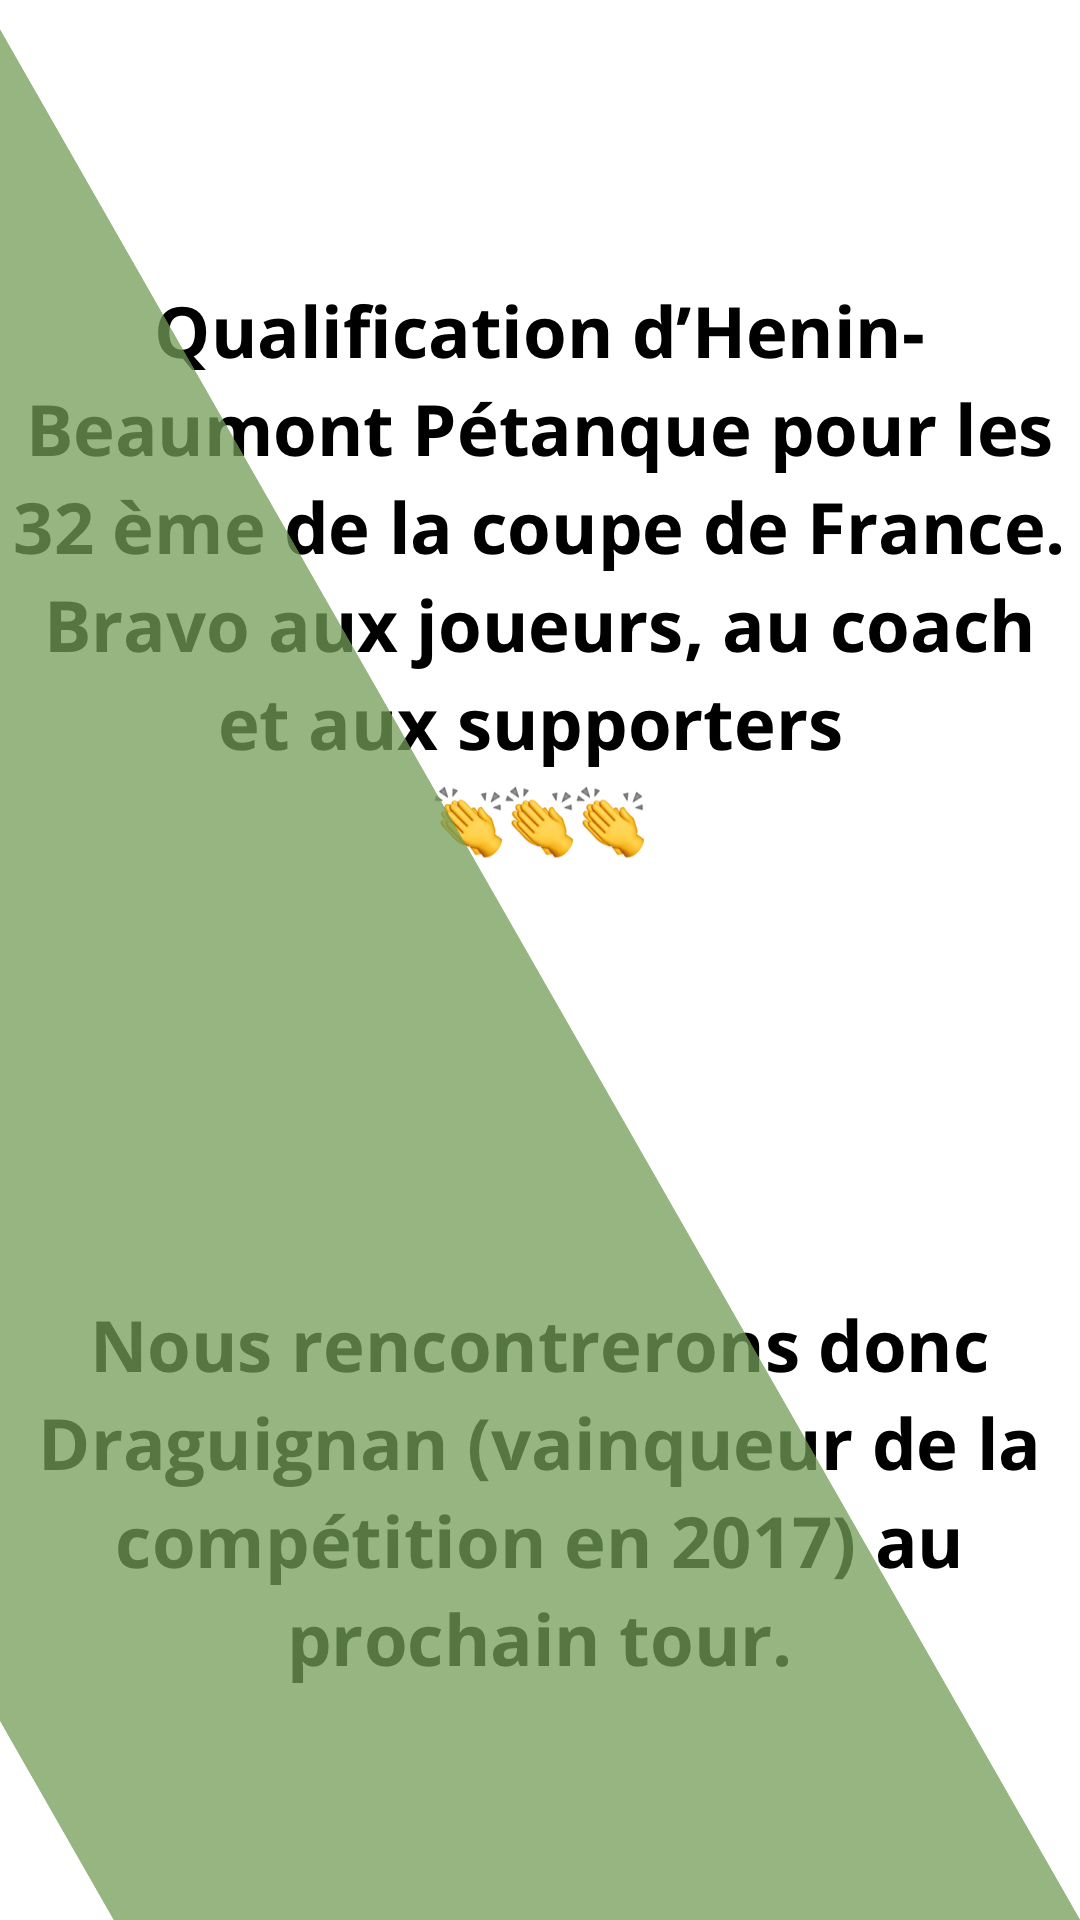 Hénin-Beaumont Pétanque en 32 ème de La Coupe de France